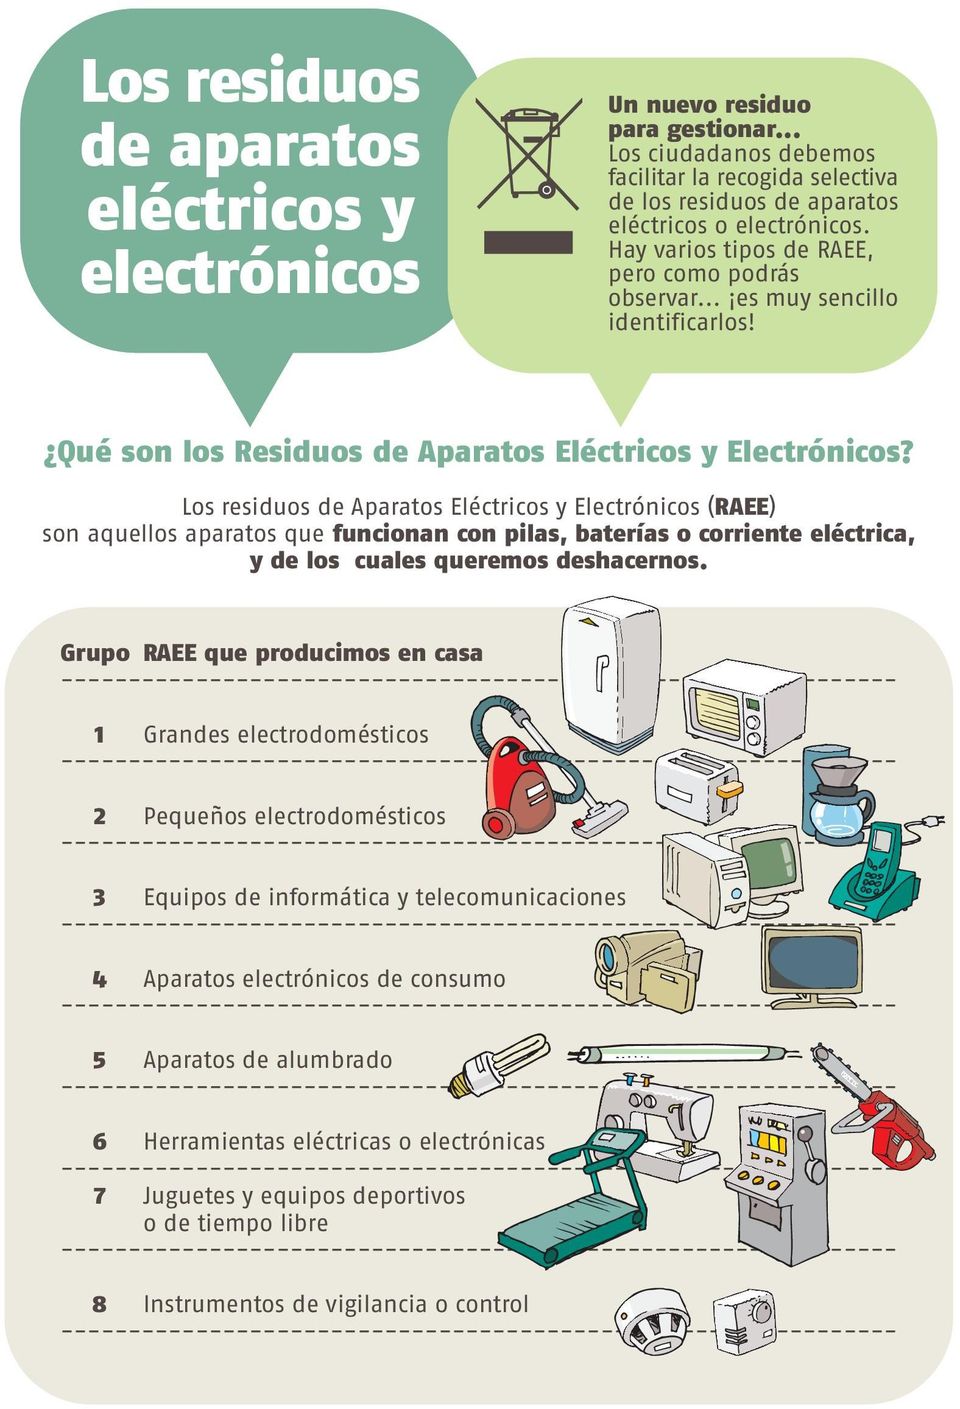 Los residuos de Aparatos Eléctricos y Electrónicos (RAEE) son aquellos aparatos que funcionan con pilas, baterías o corriente eléctrica, y de los cuales queremos deshacernos.